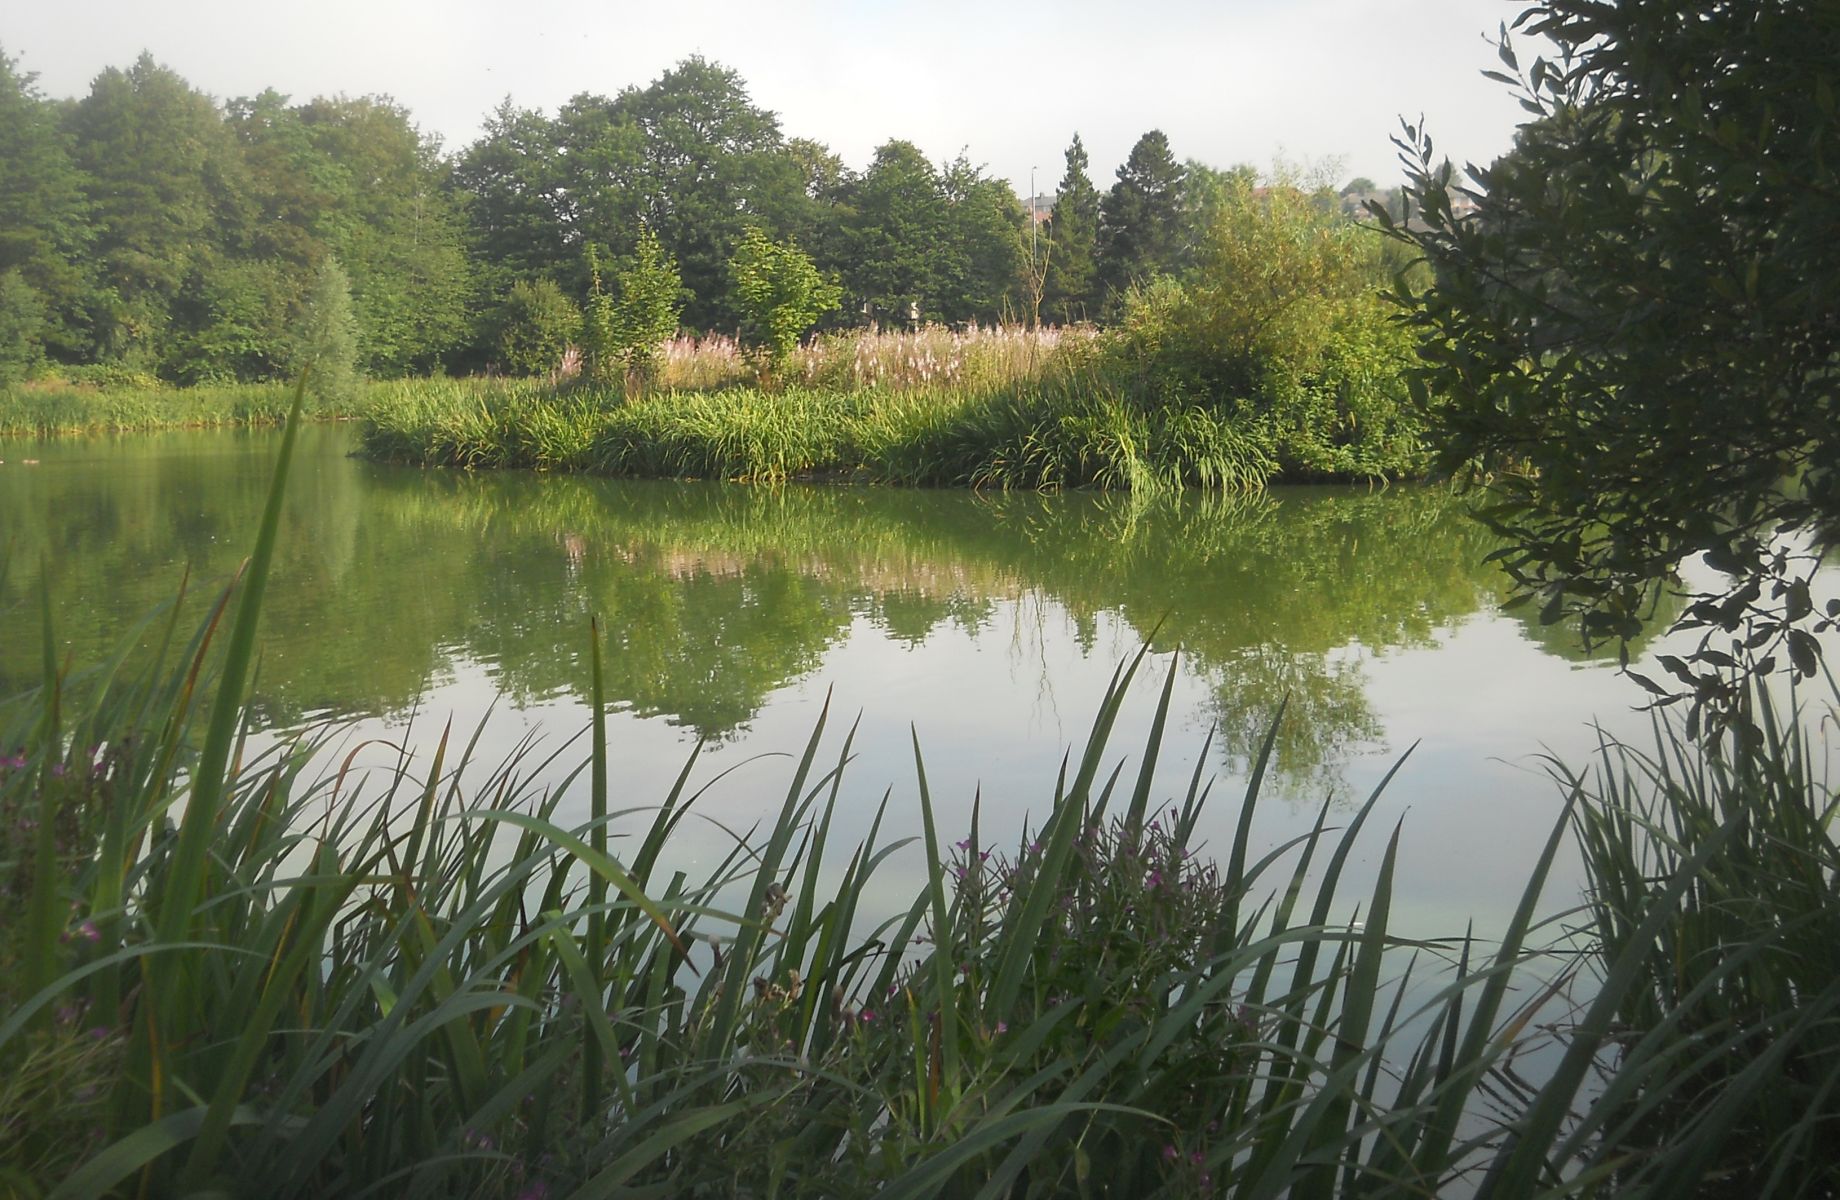 Bingham's Pond in Great Western Road